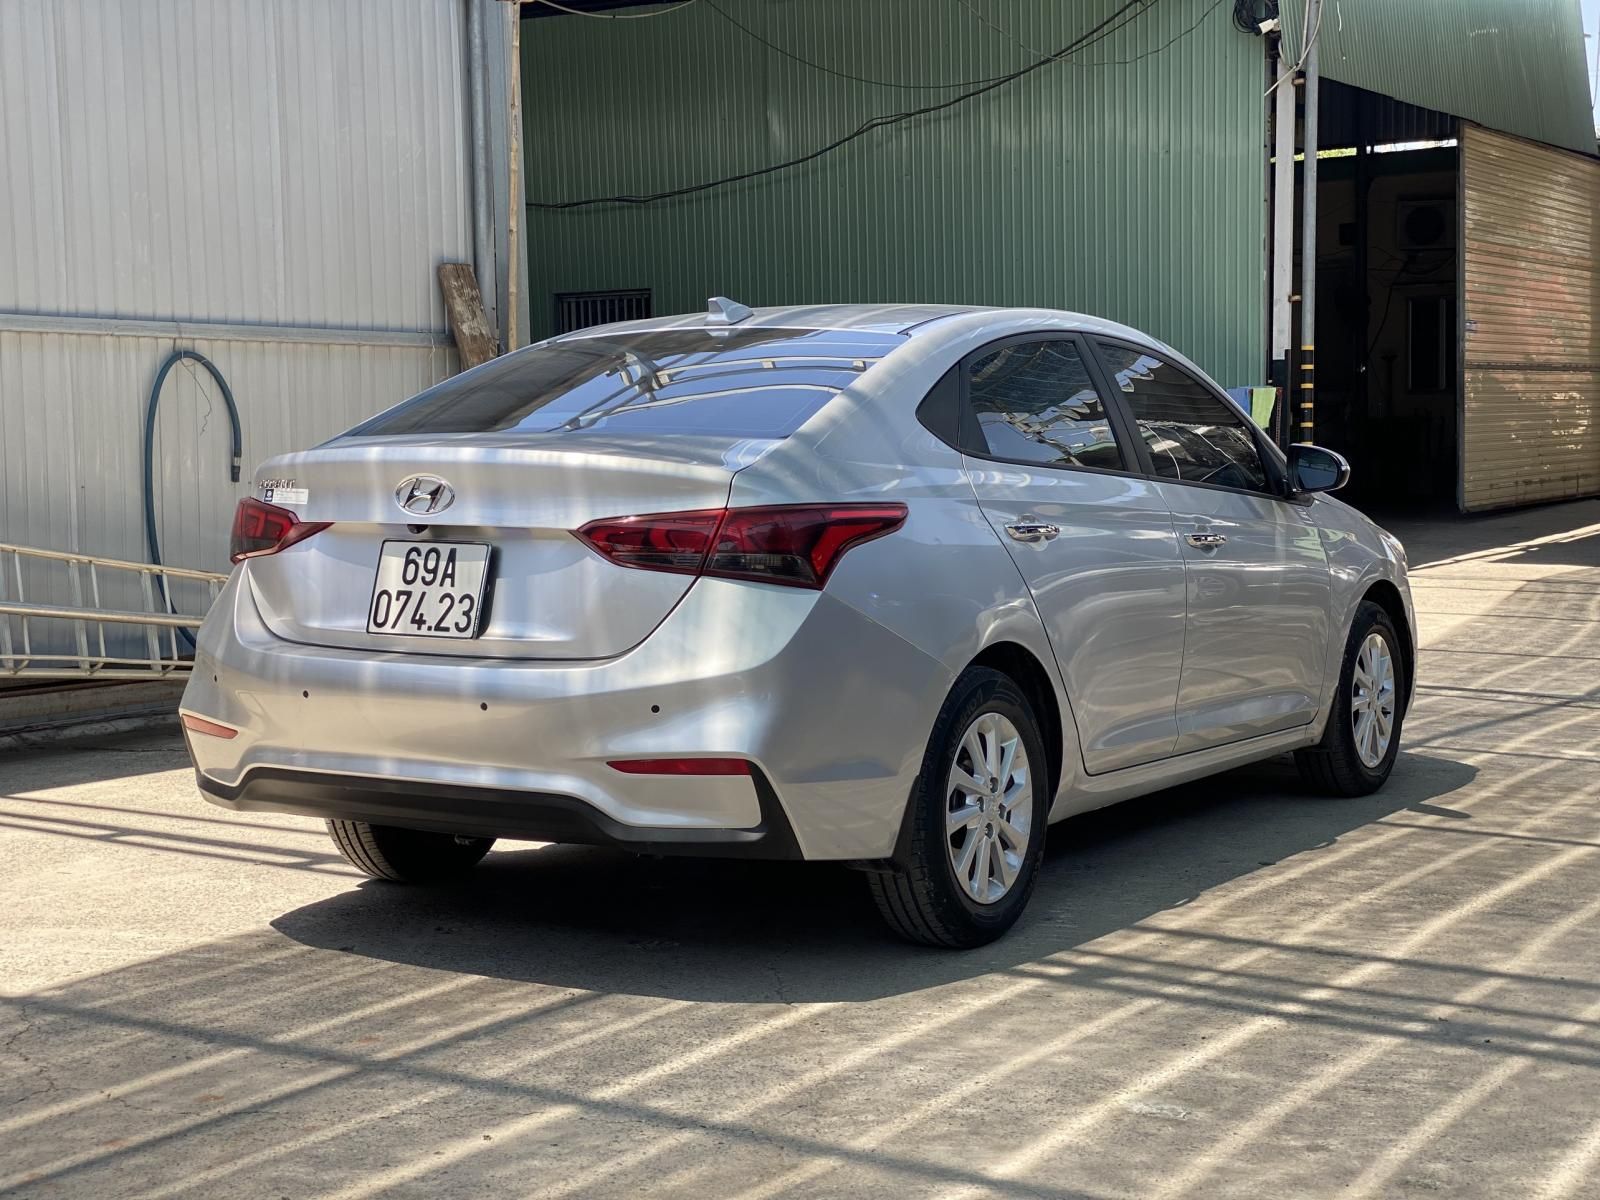 Cần bán gấp xe Hyundai Accent AT màu bạc, năm sản xuất 2019, cam kết động cơ hộp số nguyên bản nhà sản xuất